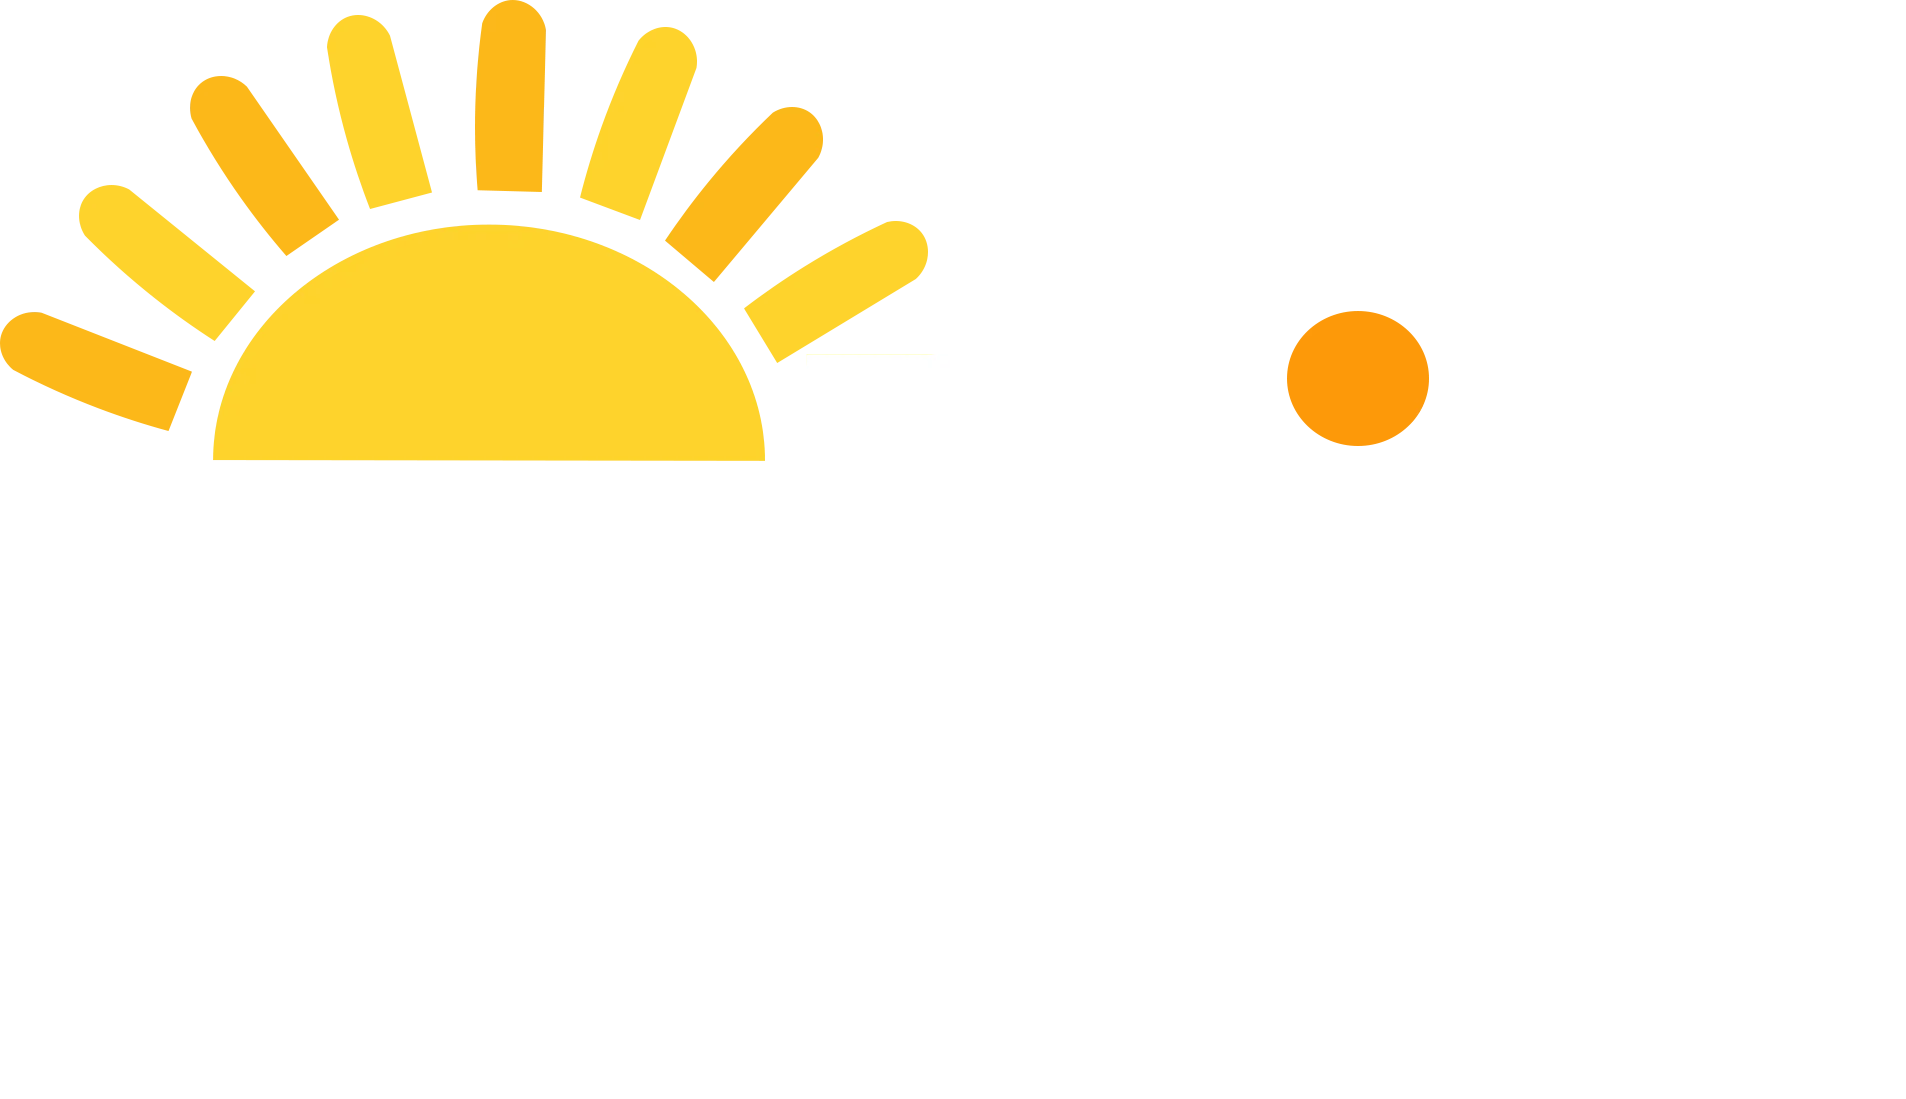 Whiz Team Adventure